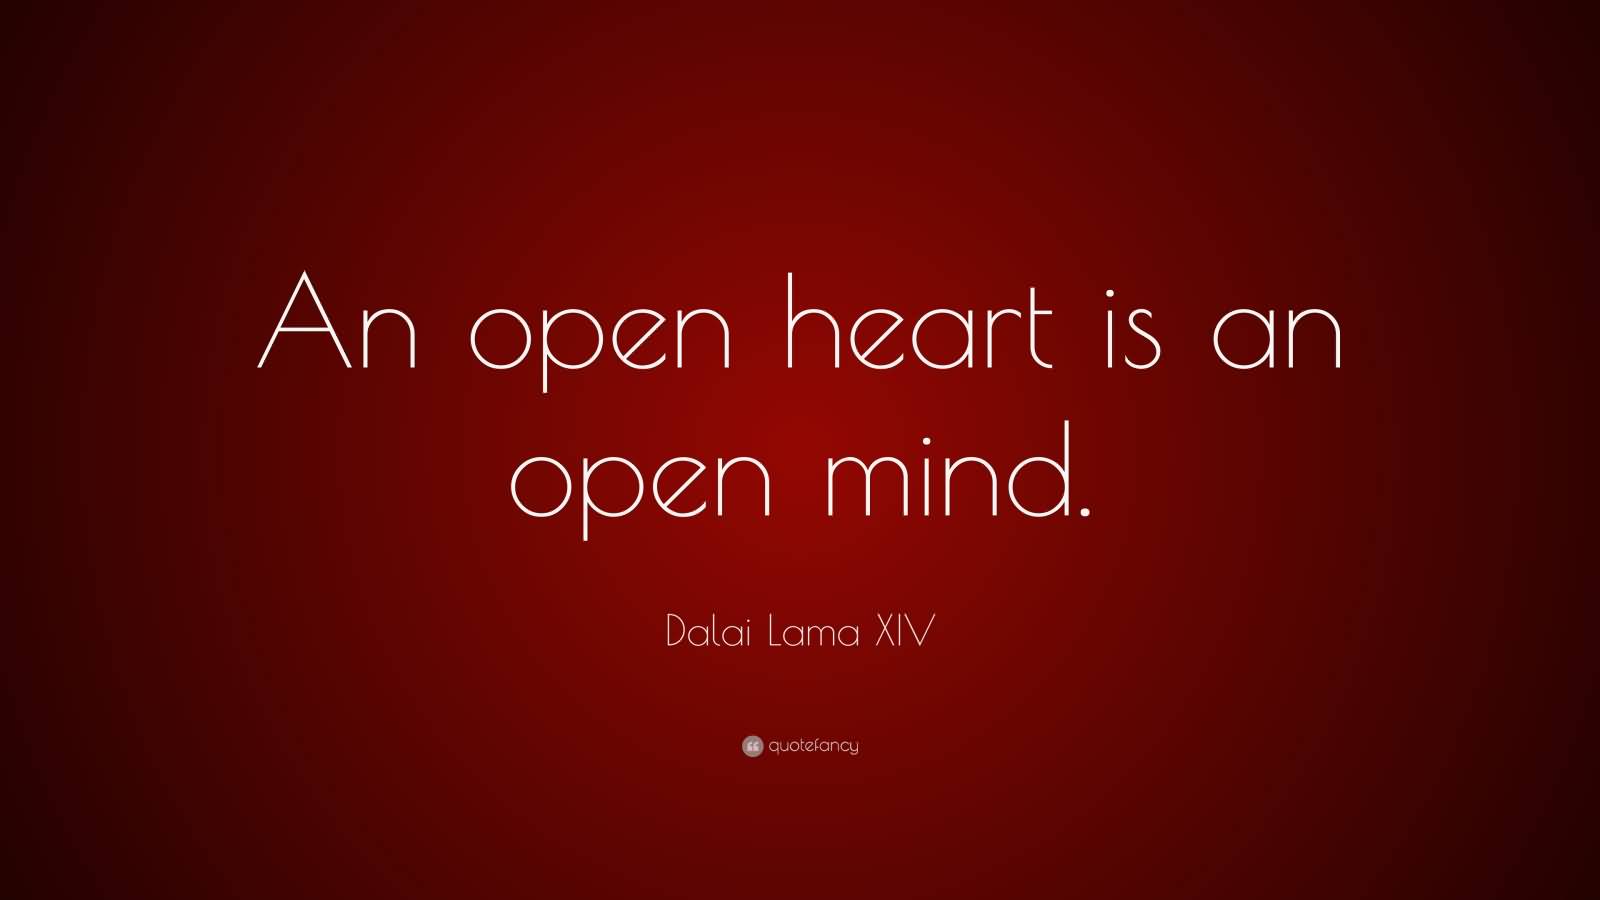 An open heart is an open mind. Dalai Lama